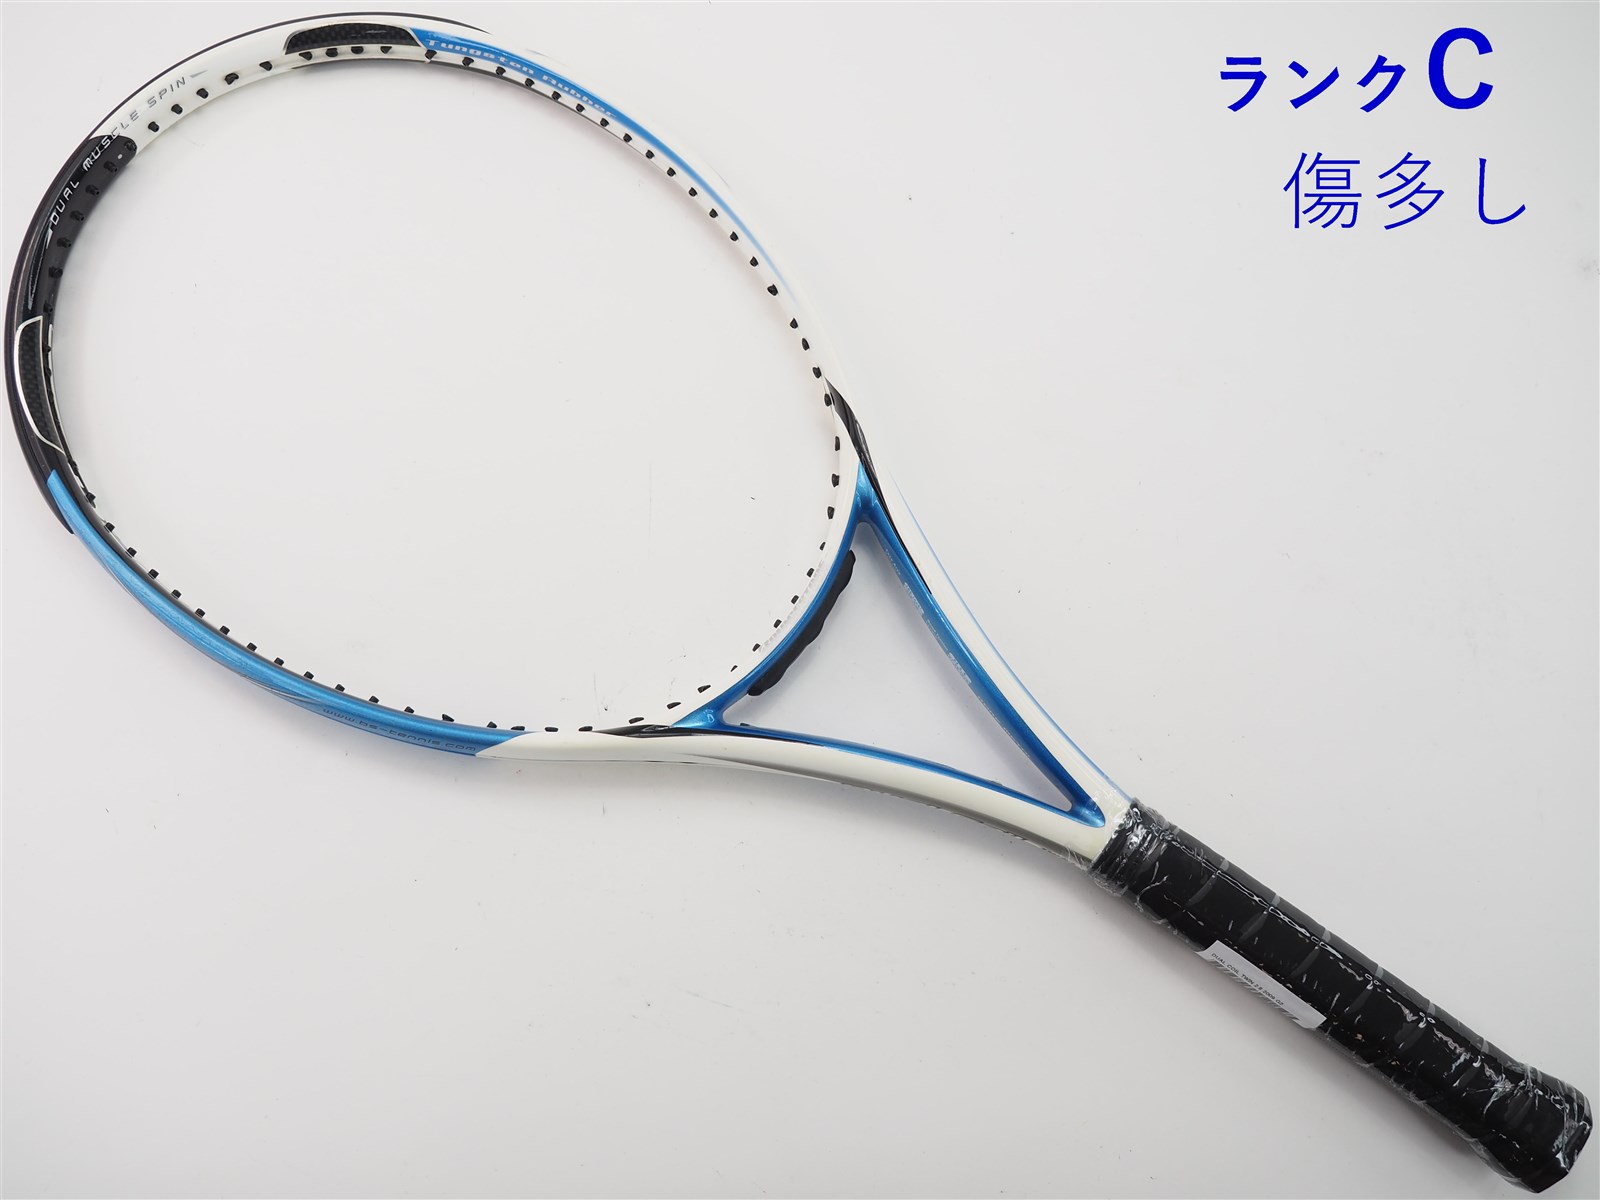 テニスラケット ブリヂストン デュアルコイル ツイン2.8 2009年モデル (G2)BRIDGESTONE DUAL COIL TWIN 2.8 2009